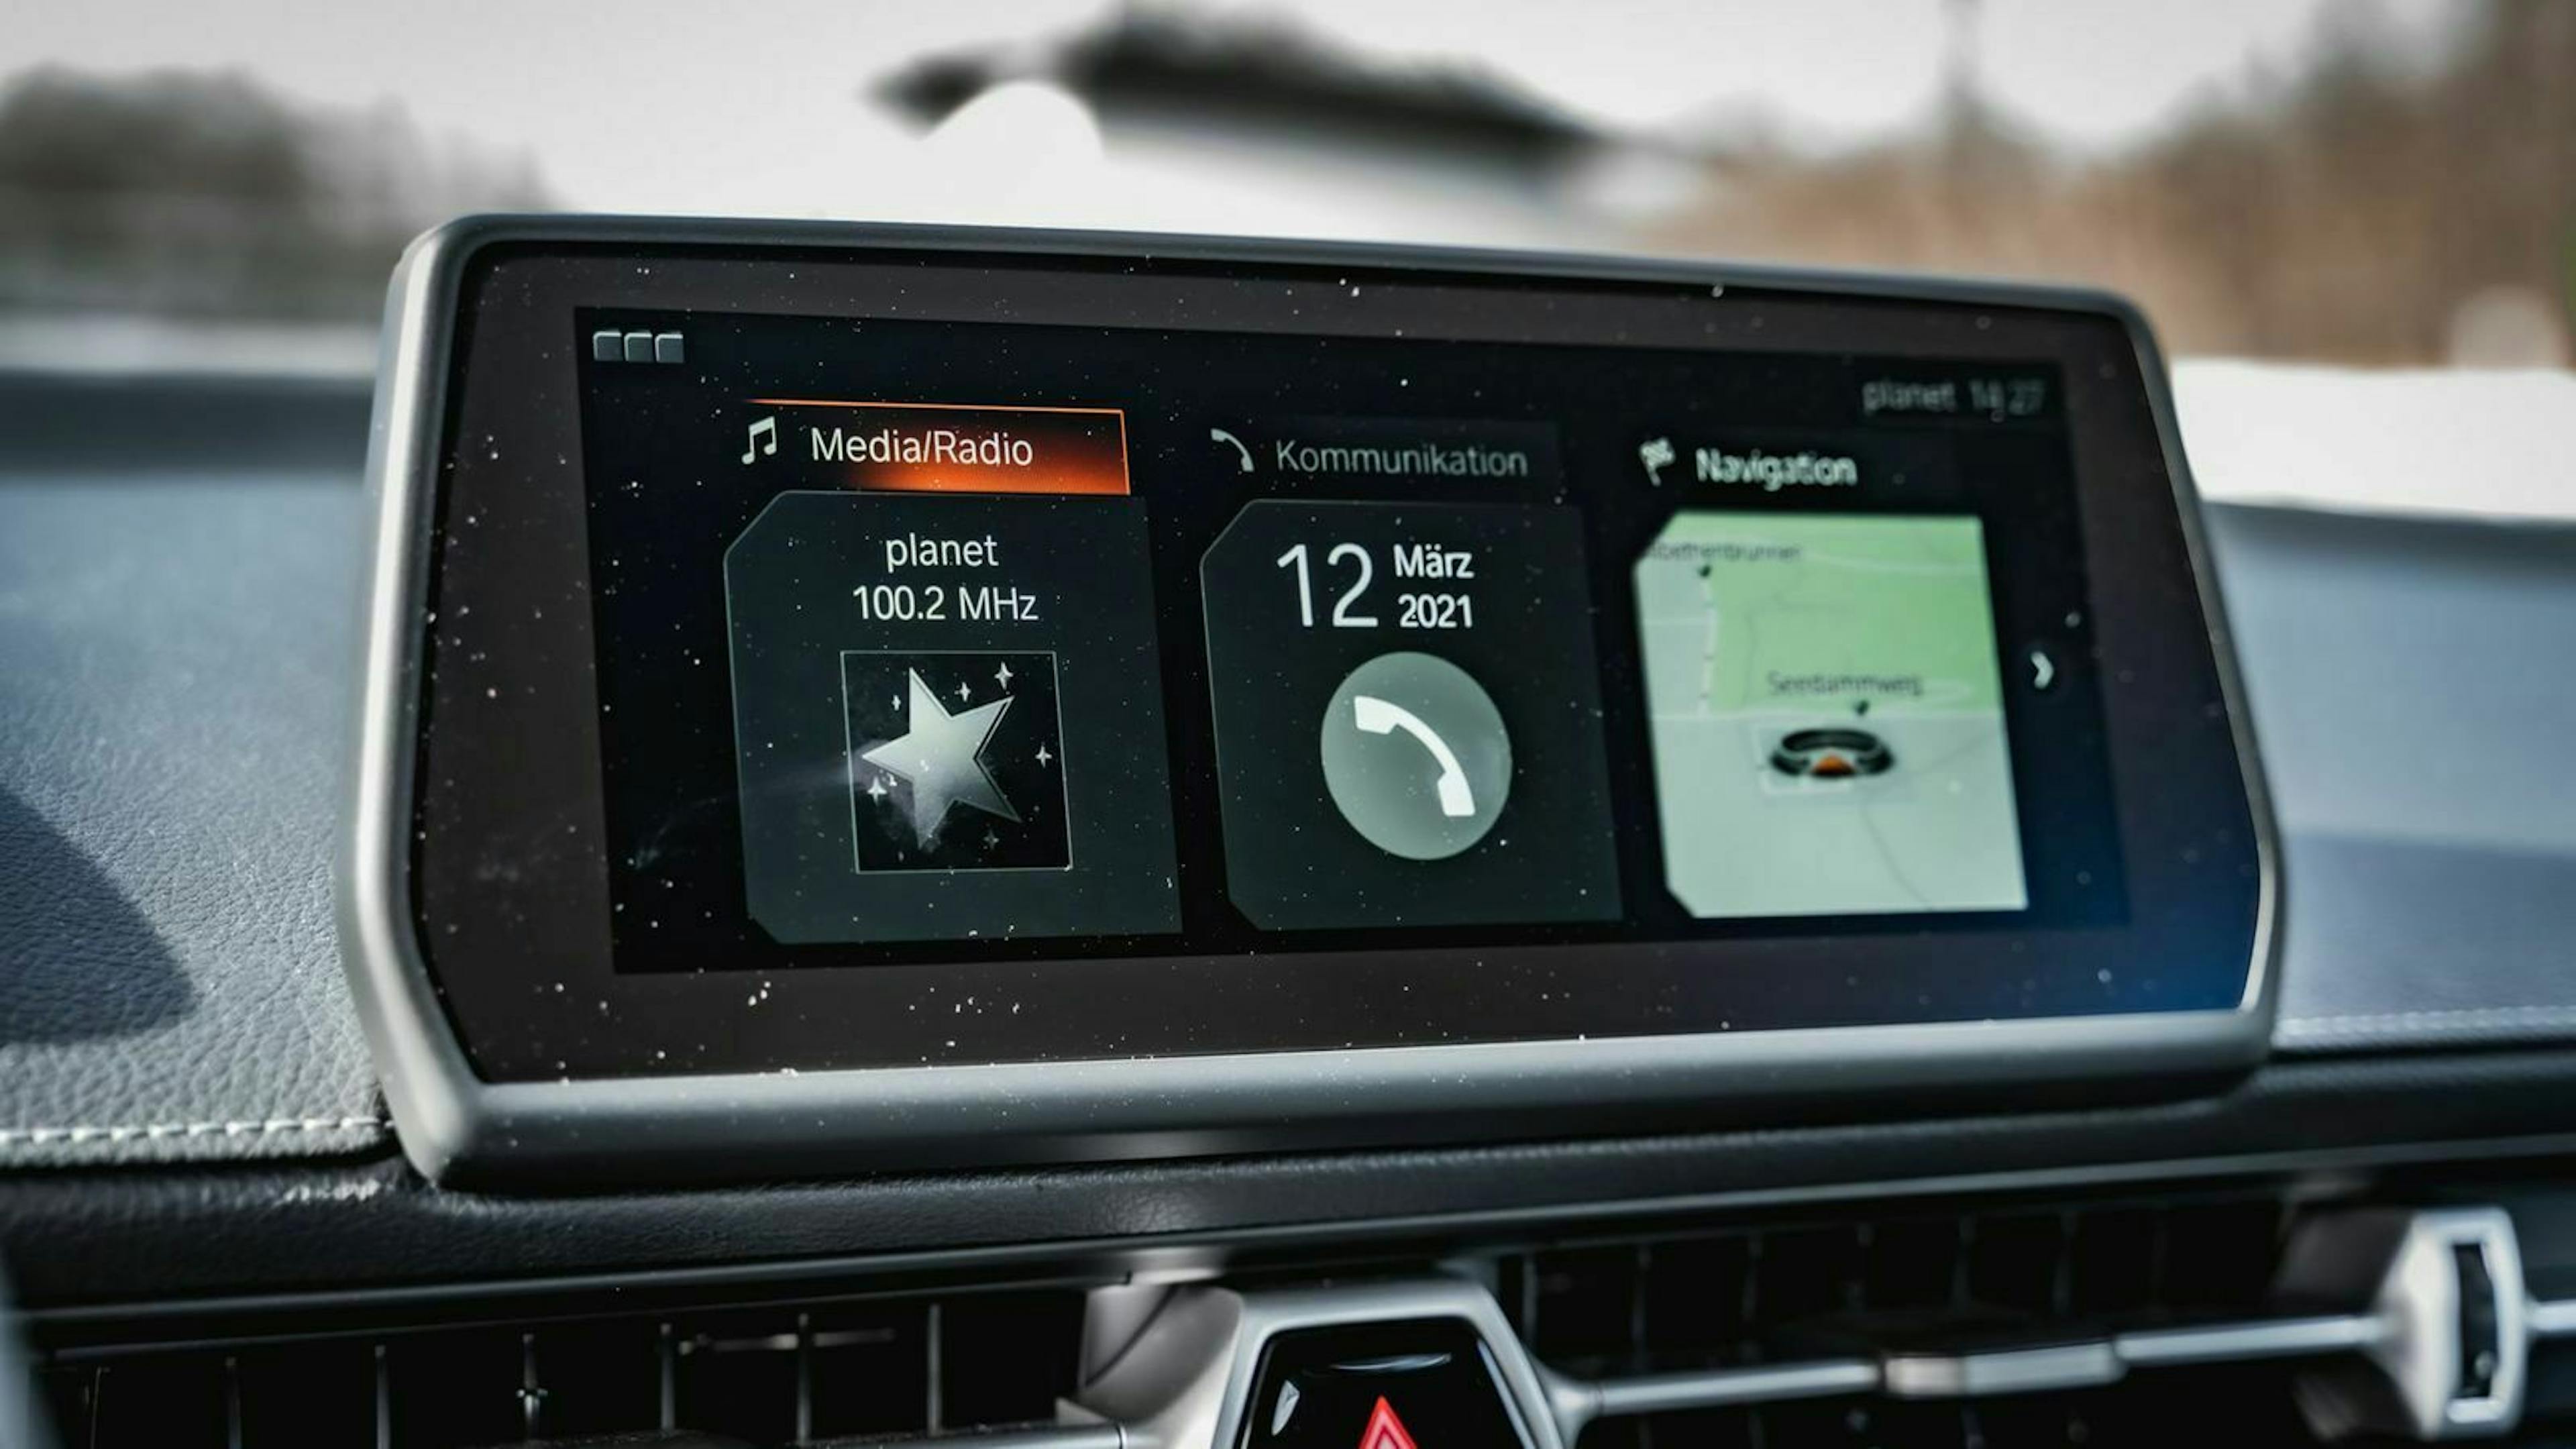 Zu sehen ist der Infotainment-Bildschirm des Toyota Supra Mk5 